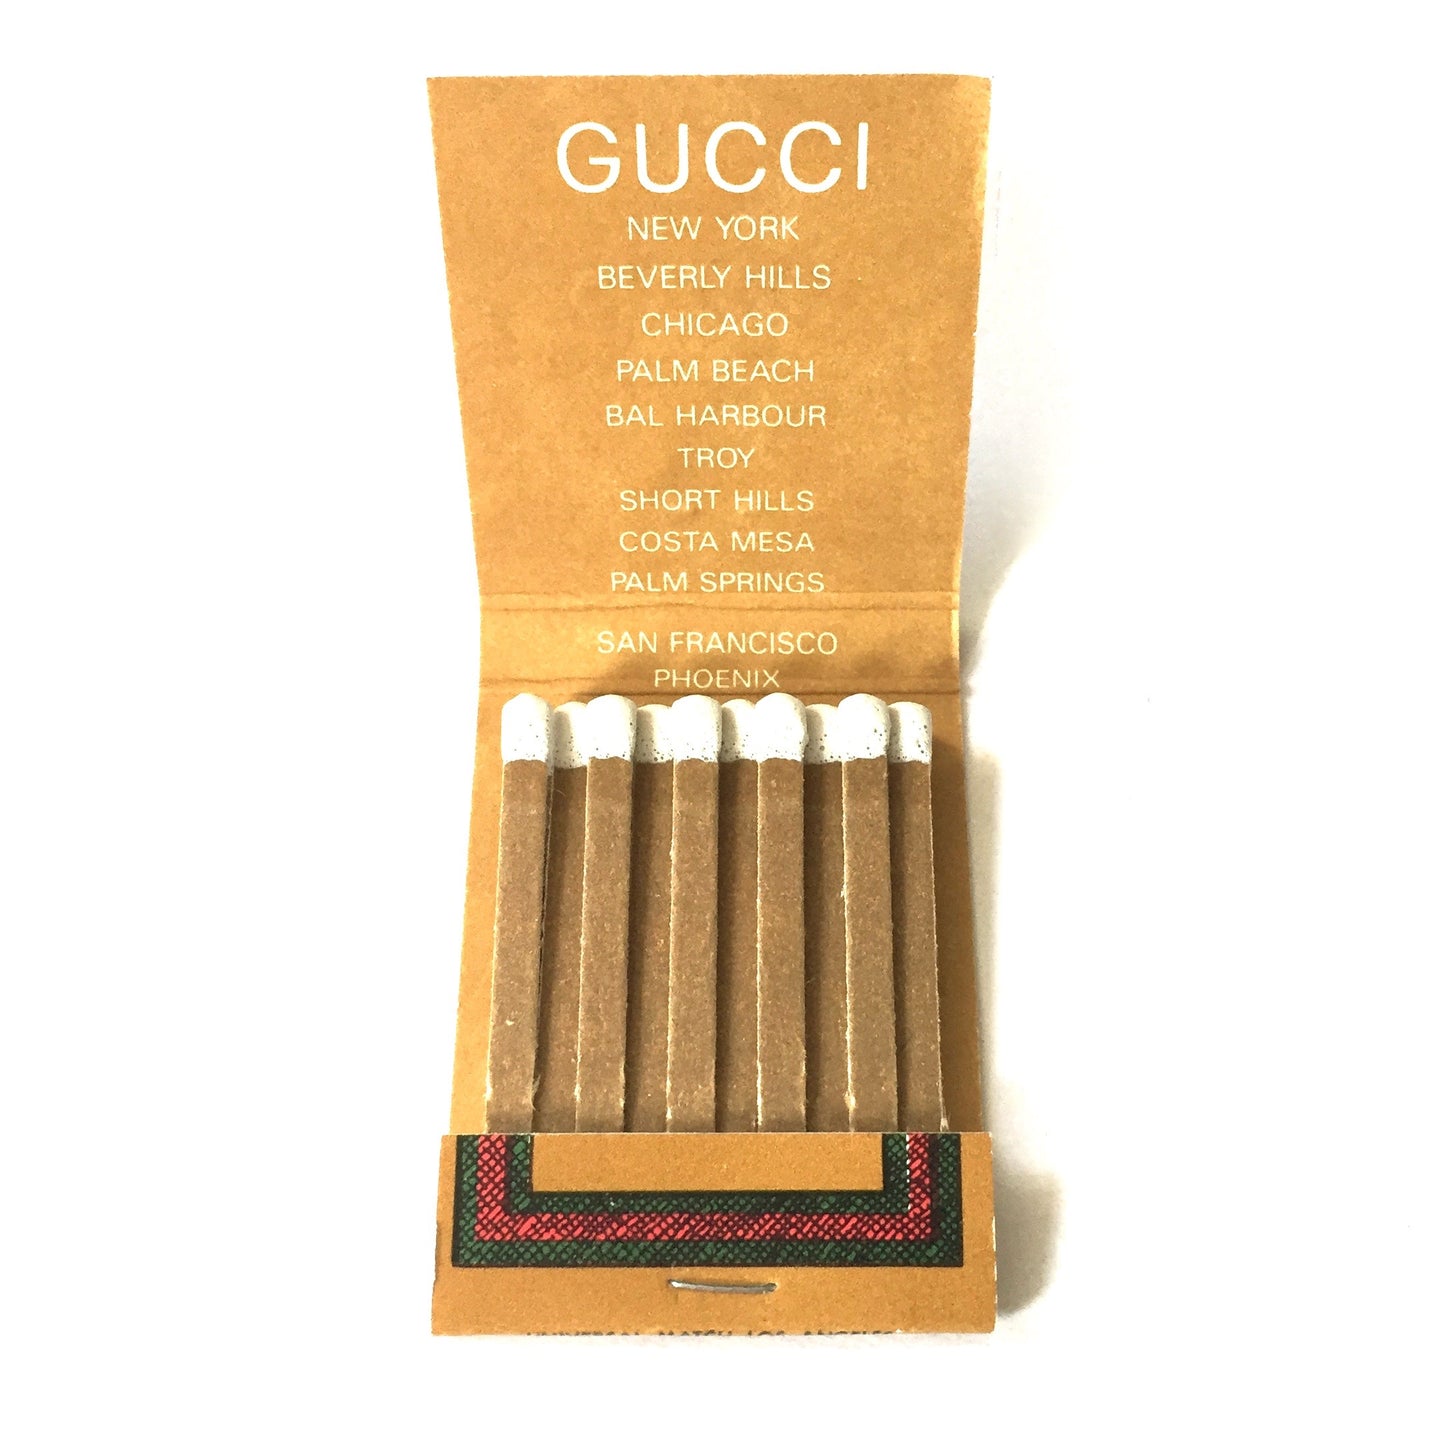 Gucci - Vintage Matchbook